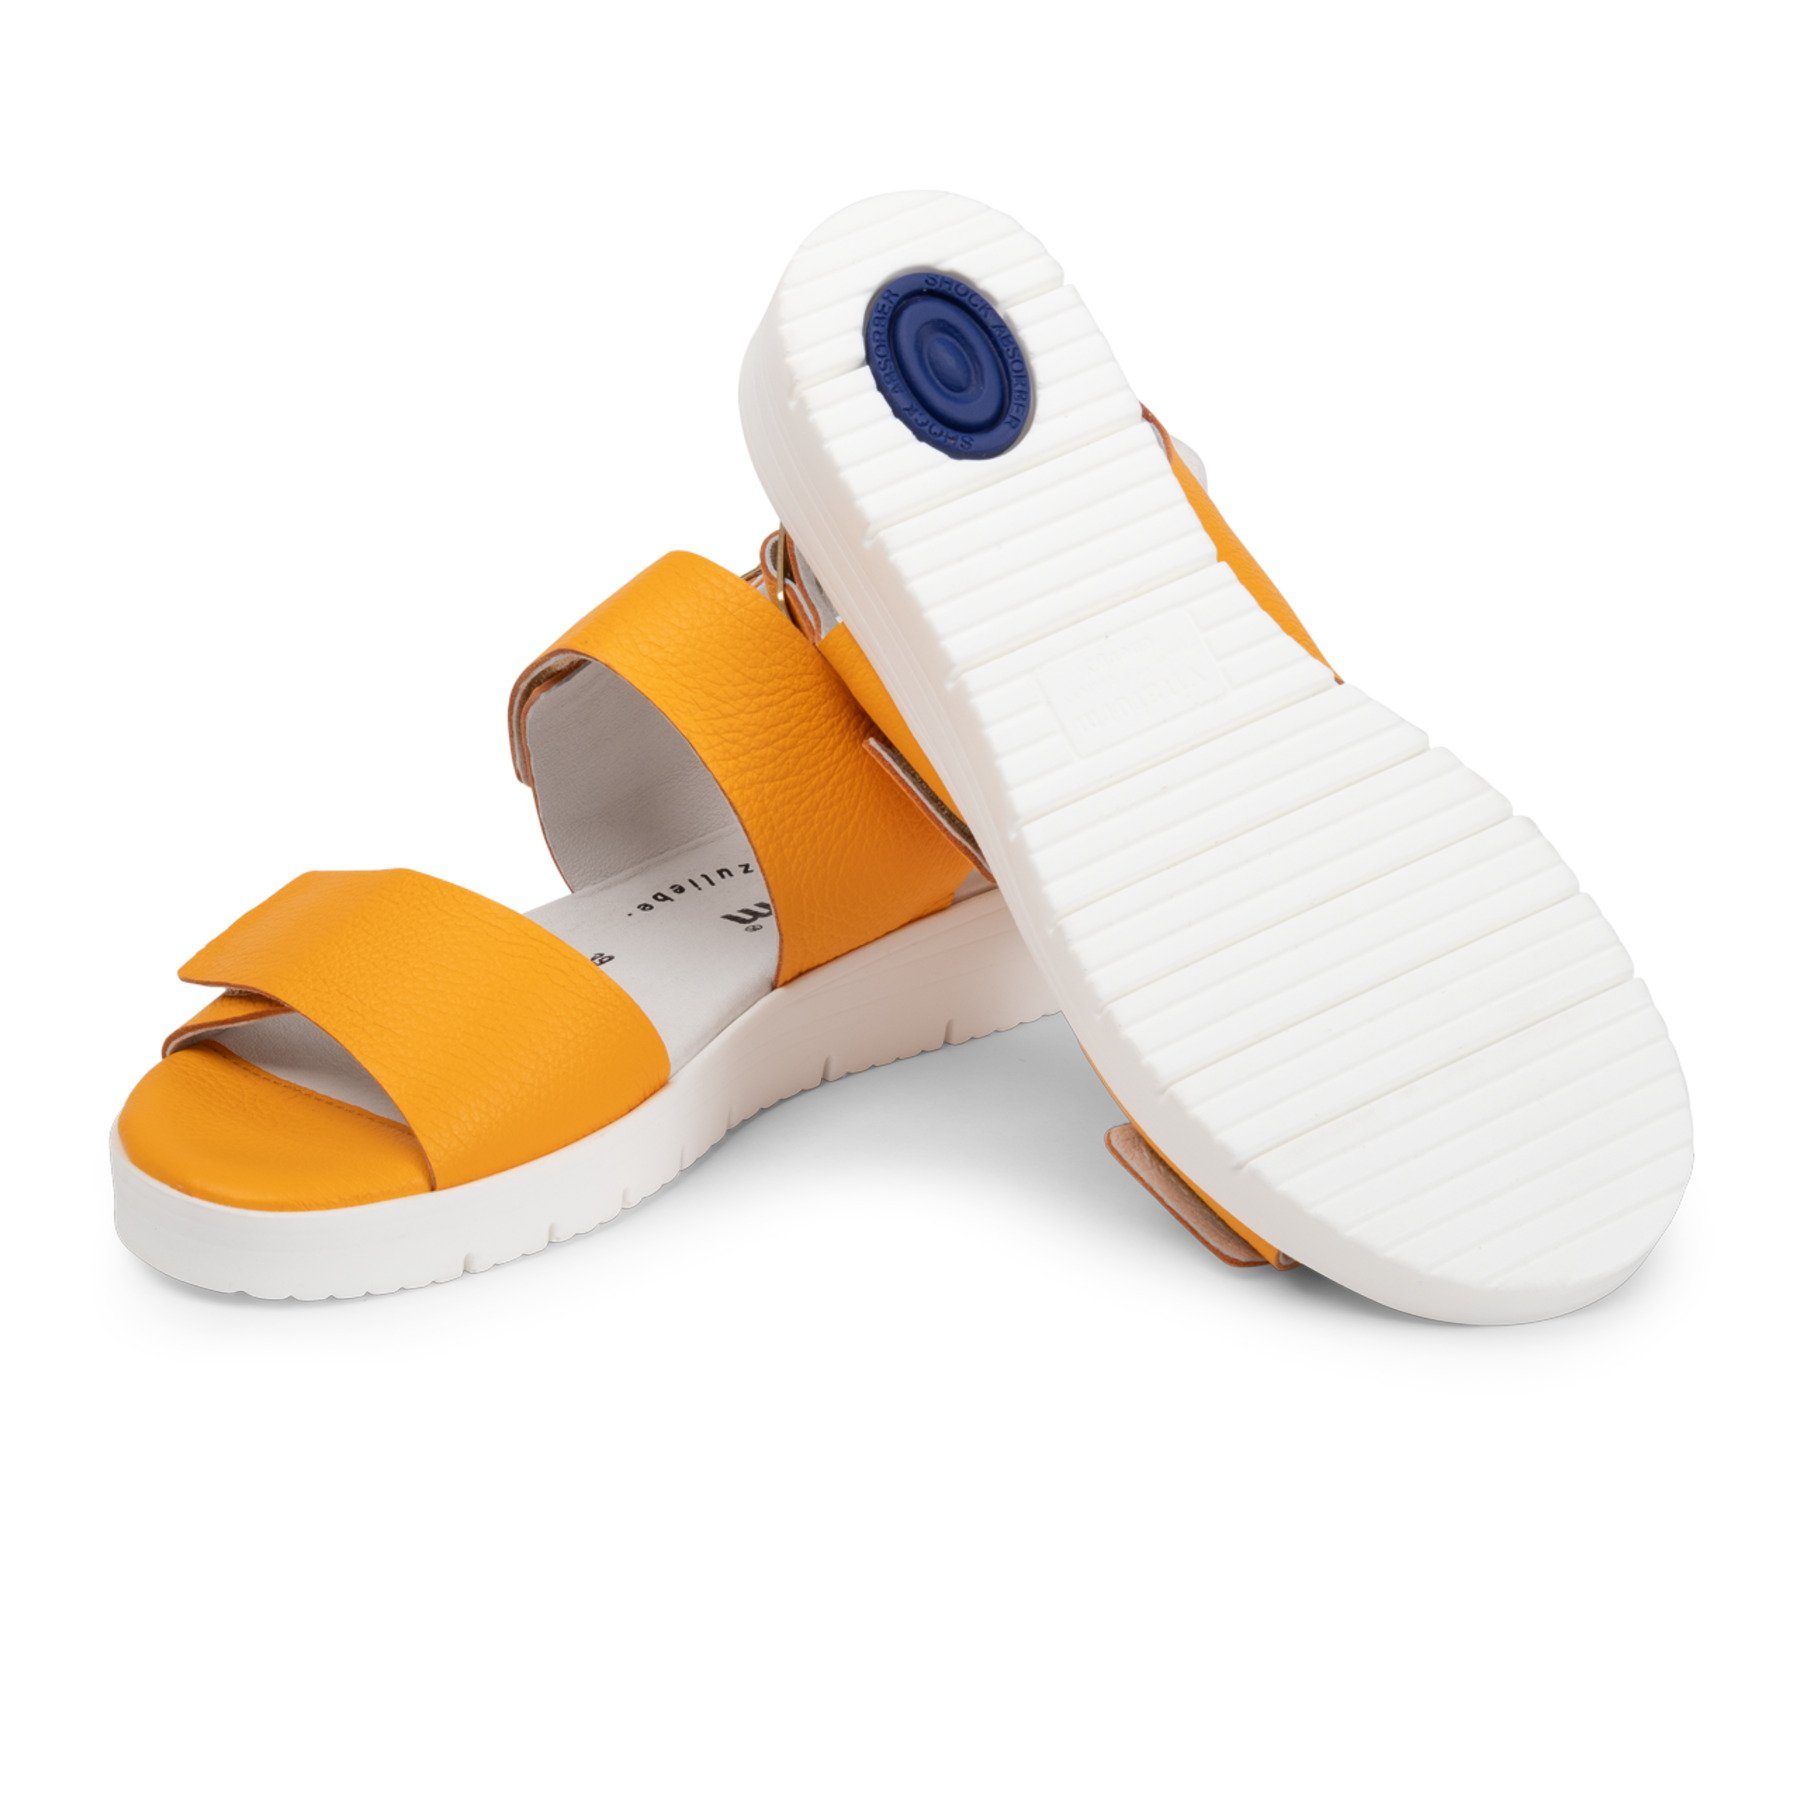 Sandale Damenschuhe orange vitaform Hirschleder Sandale